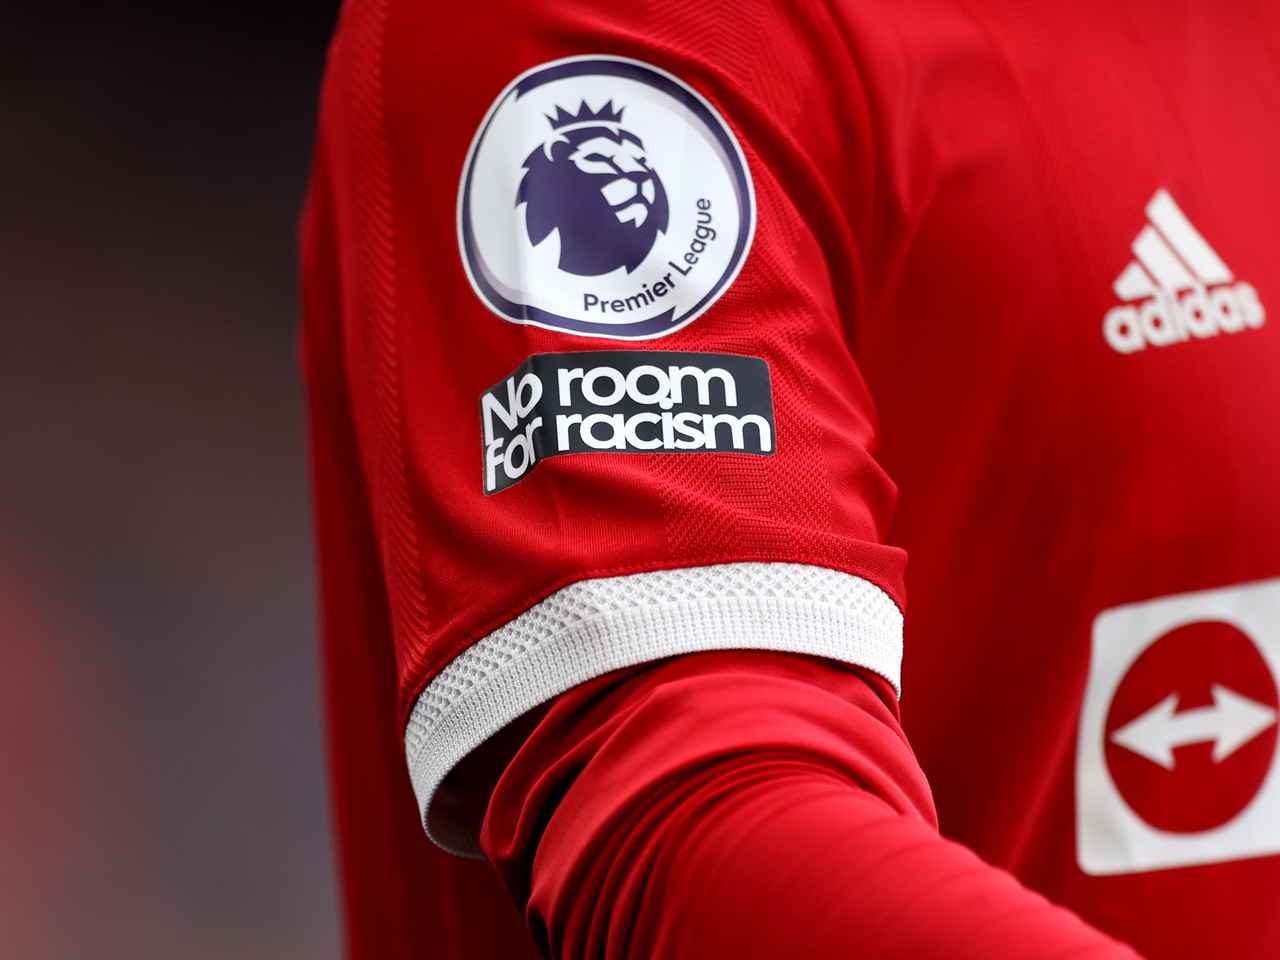 No Room For Racism - khẩu hiệu chống phân biệt chủng tộc trên tay áo các cầu thủ NHA (Ảnh: Manchester United)